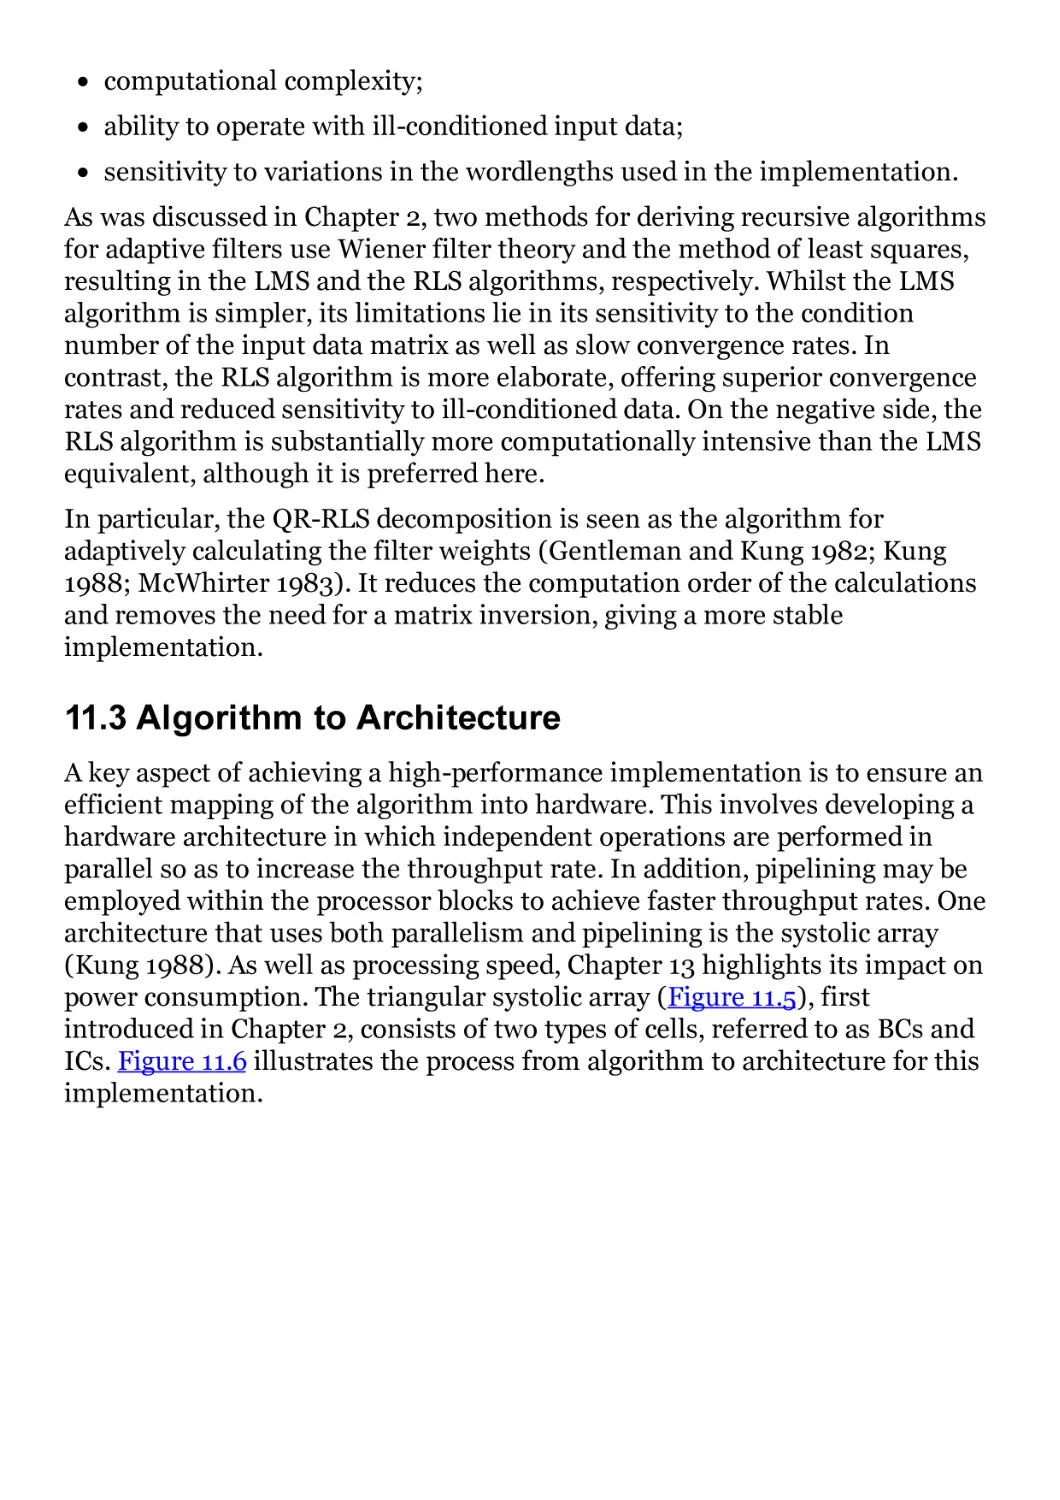 11.3 Algorithm to Architecture